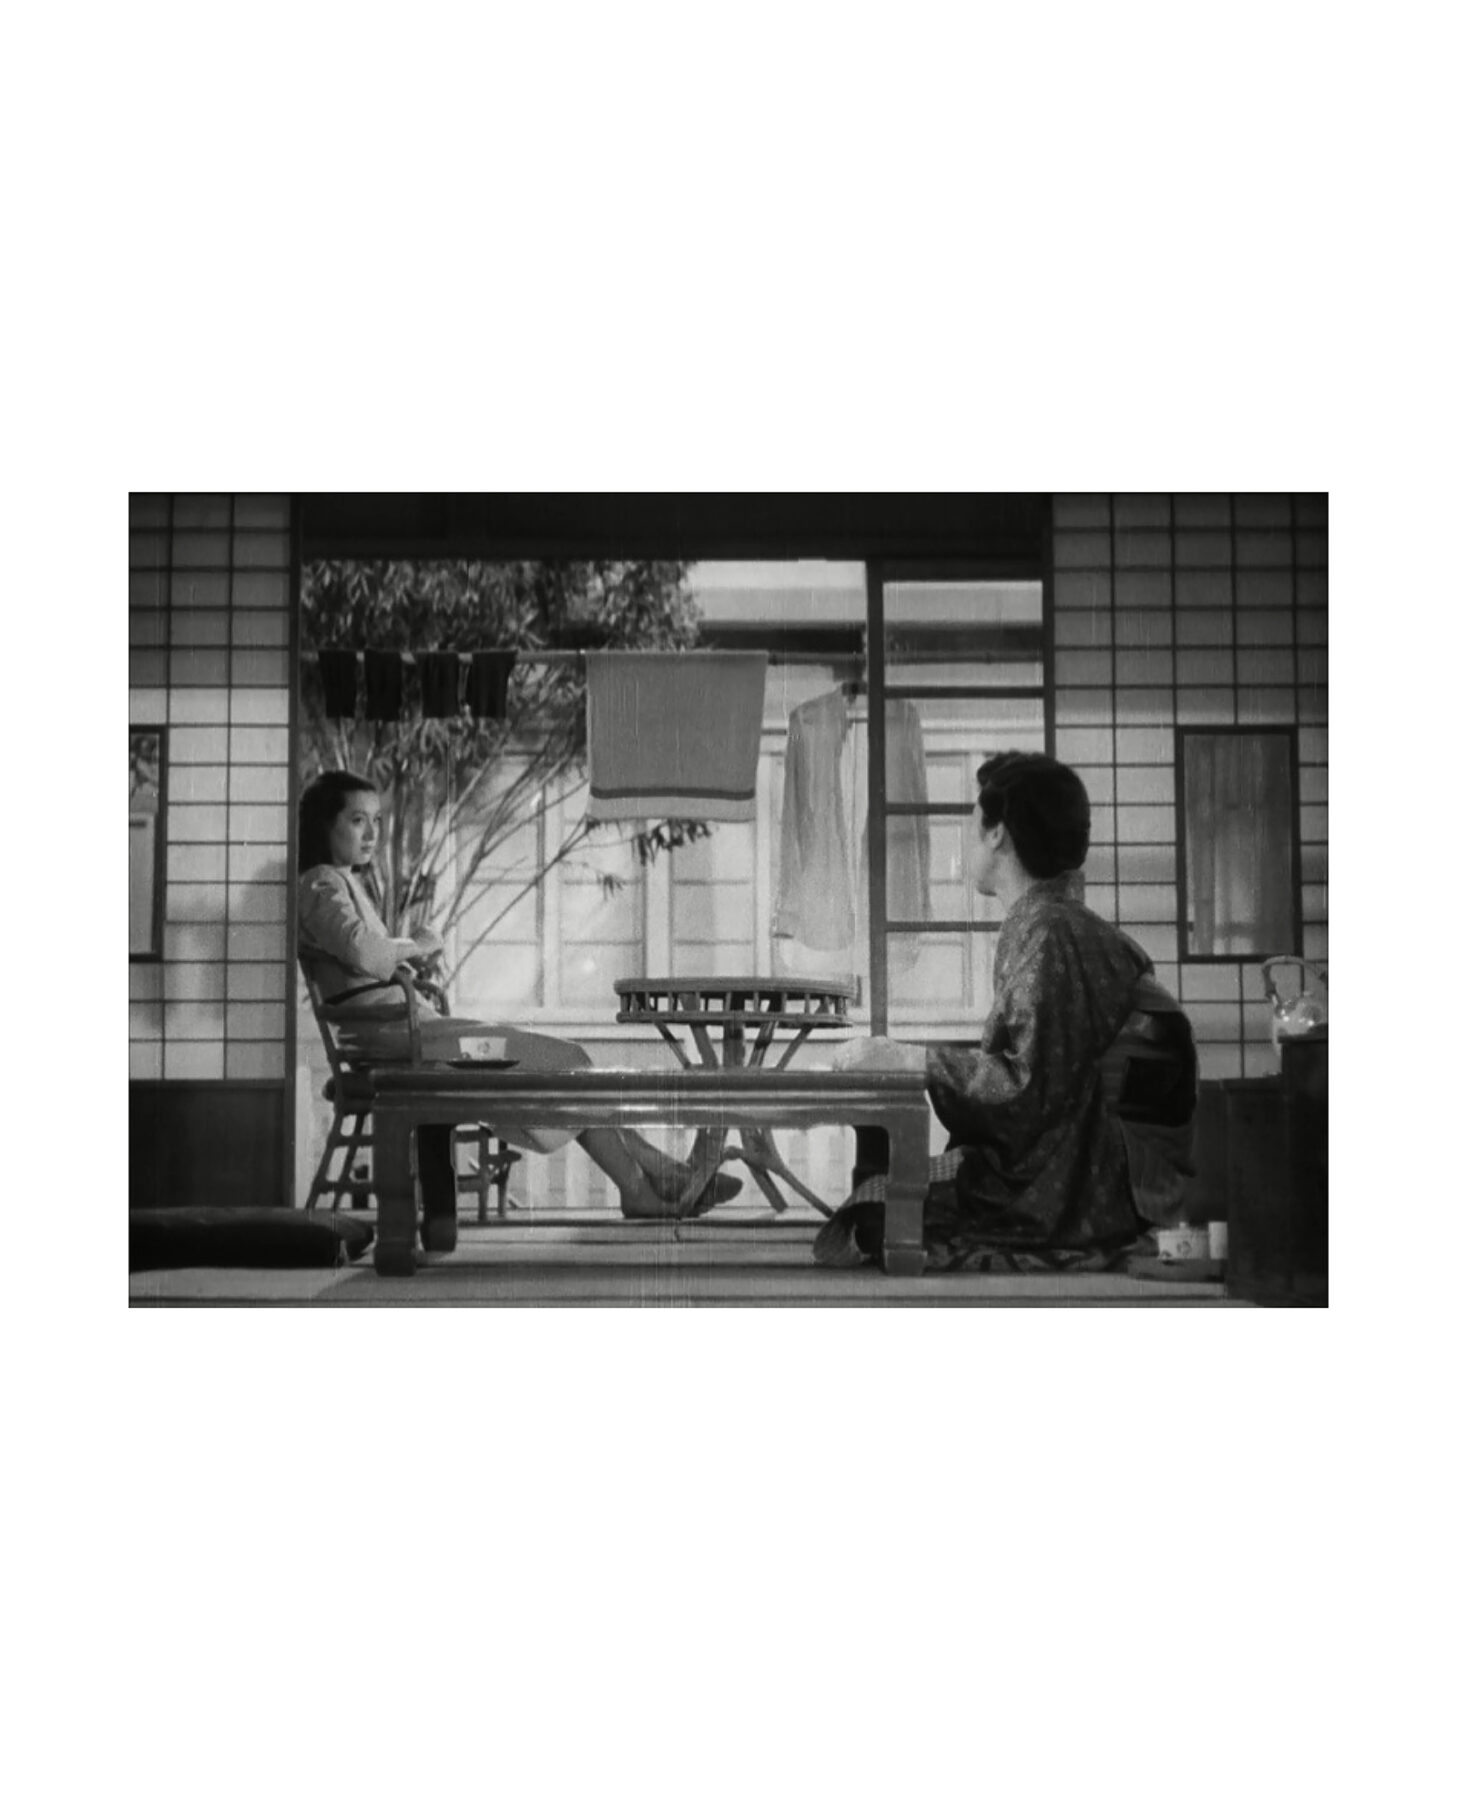 Archisearch «Ο Μοντέρνος εξωτισμός του Τόκιο, μέσα από την κινηματογραφική αφήγηση των Ozu, Wenders και Coppola» | Ερευνητική Εργασία από τον Τσιορολή Γιώργο